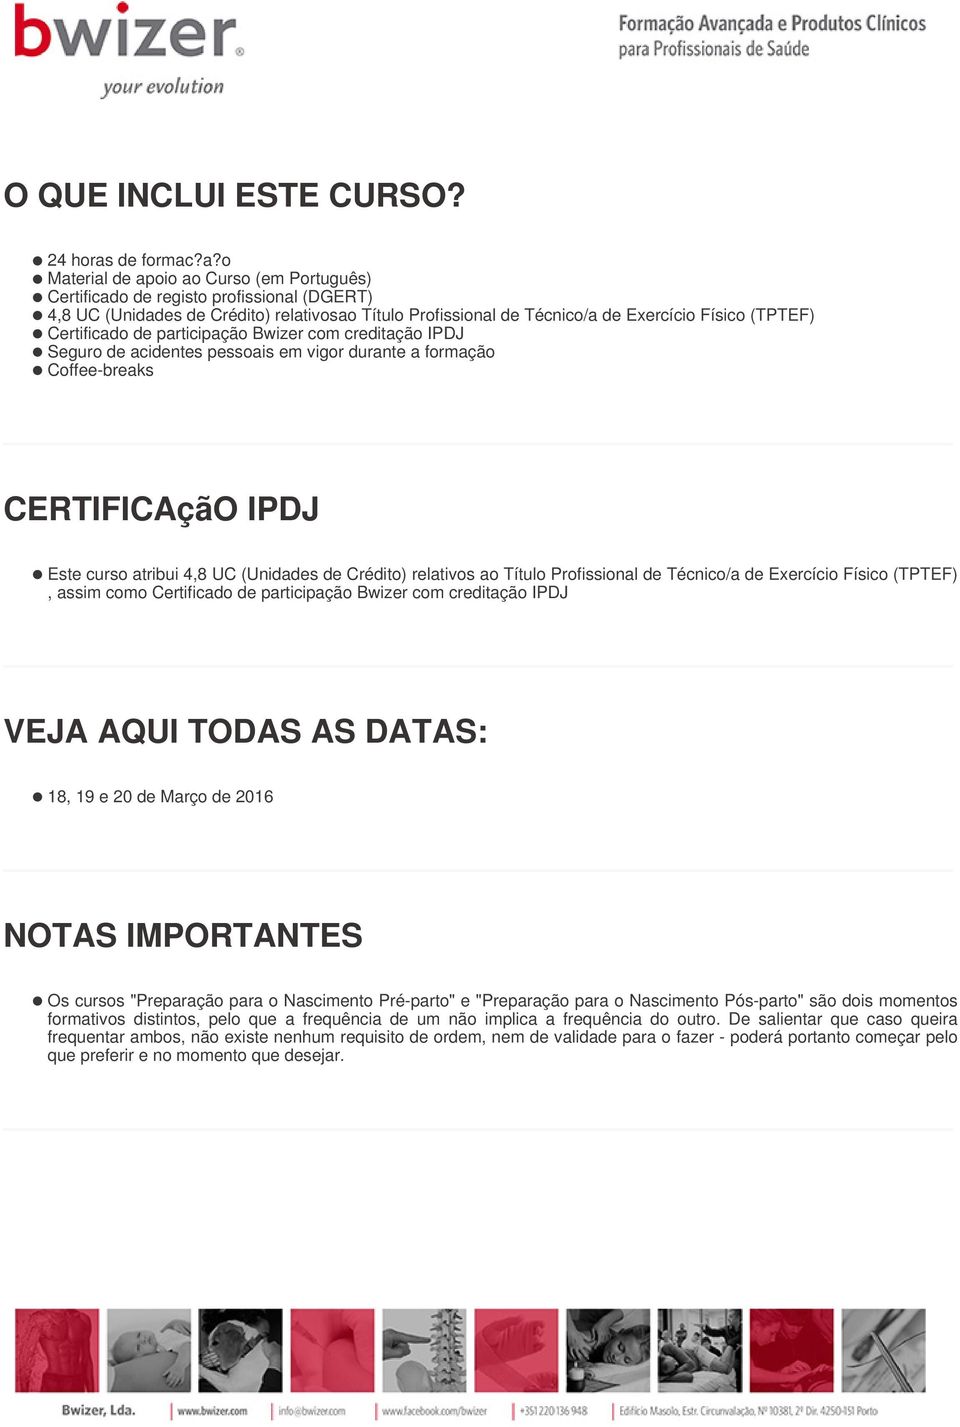 ?a?o Material de apoio ao Curso (em Português) Certificado de registo profissional (DGERT) 4,8 UC (Unidades de Crédito) relativosao Título Profissional de Técnico/a de Exercício Físico (TPTEF)